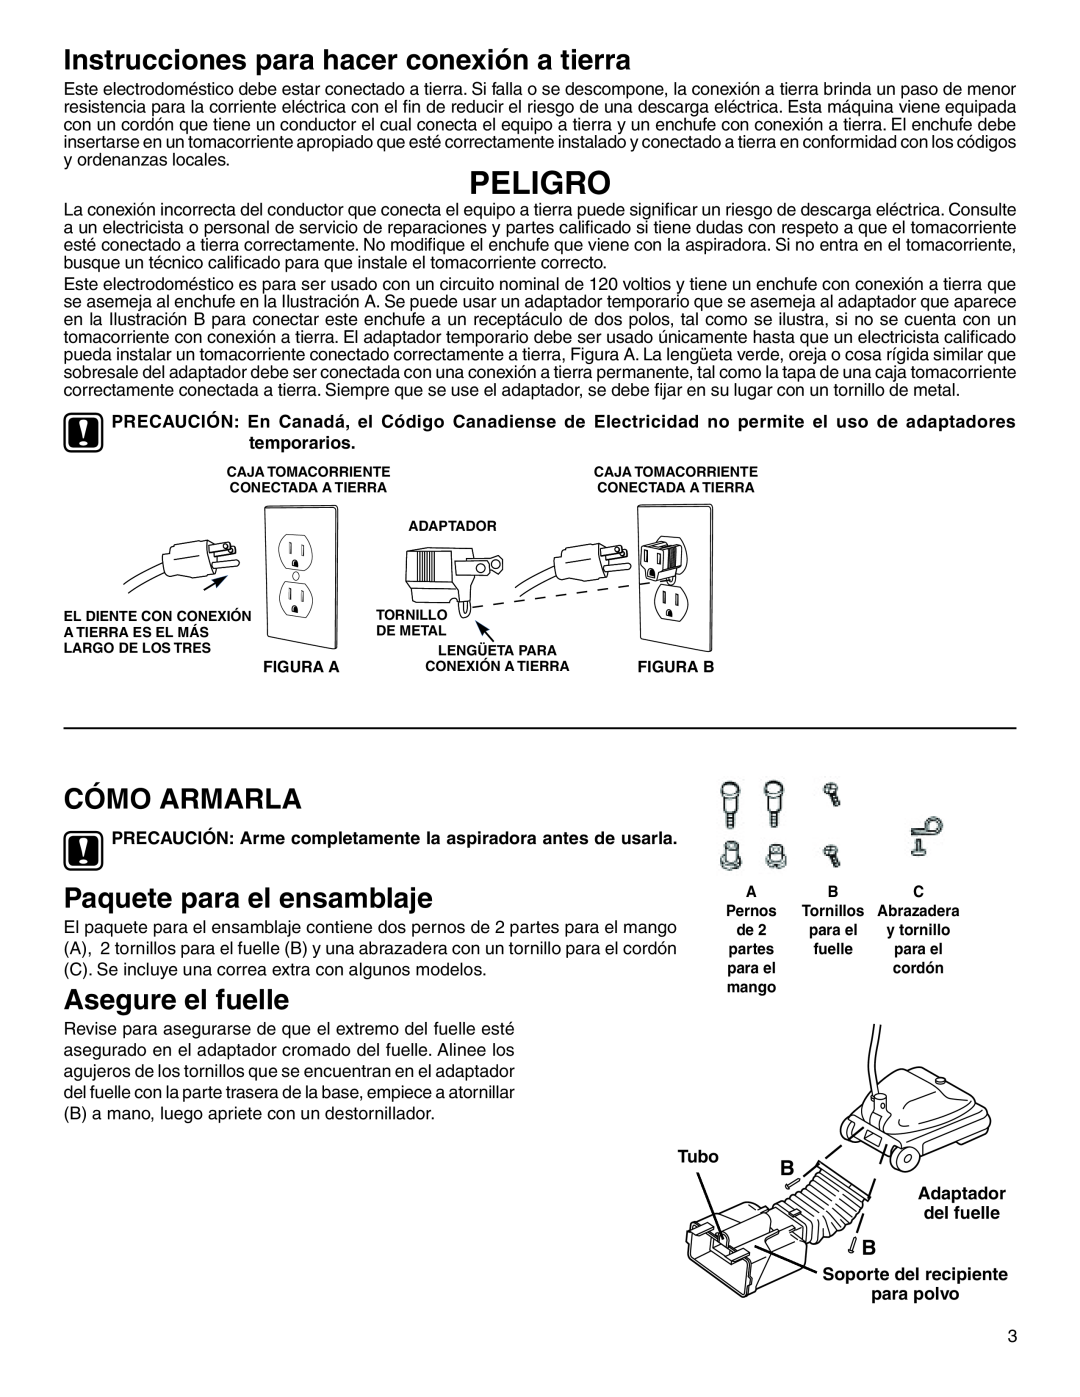 Sanitaire 880 warranty Peligro, Instrucciones para hacer conexión a tierra, Cómo Armarla, Paquete para el ensamblaje, Tubo 